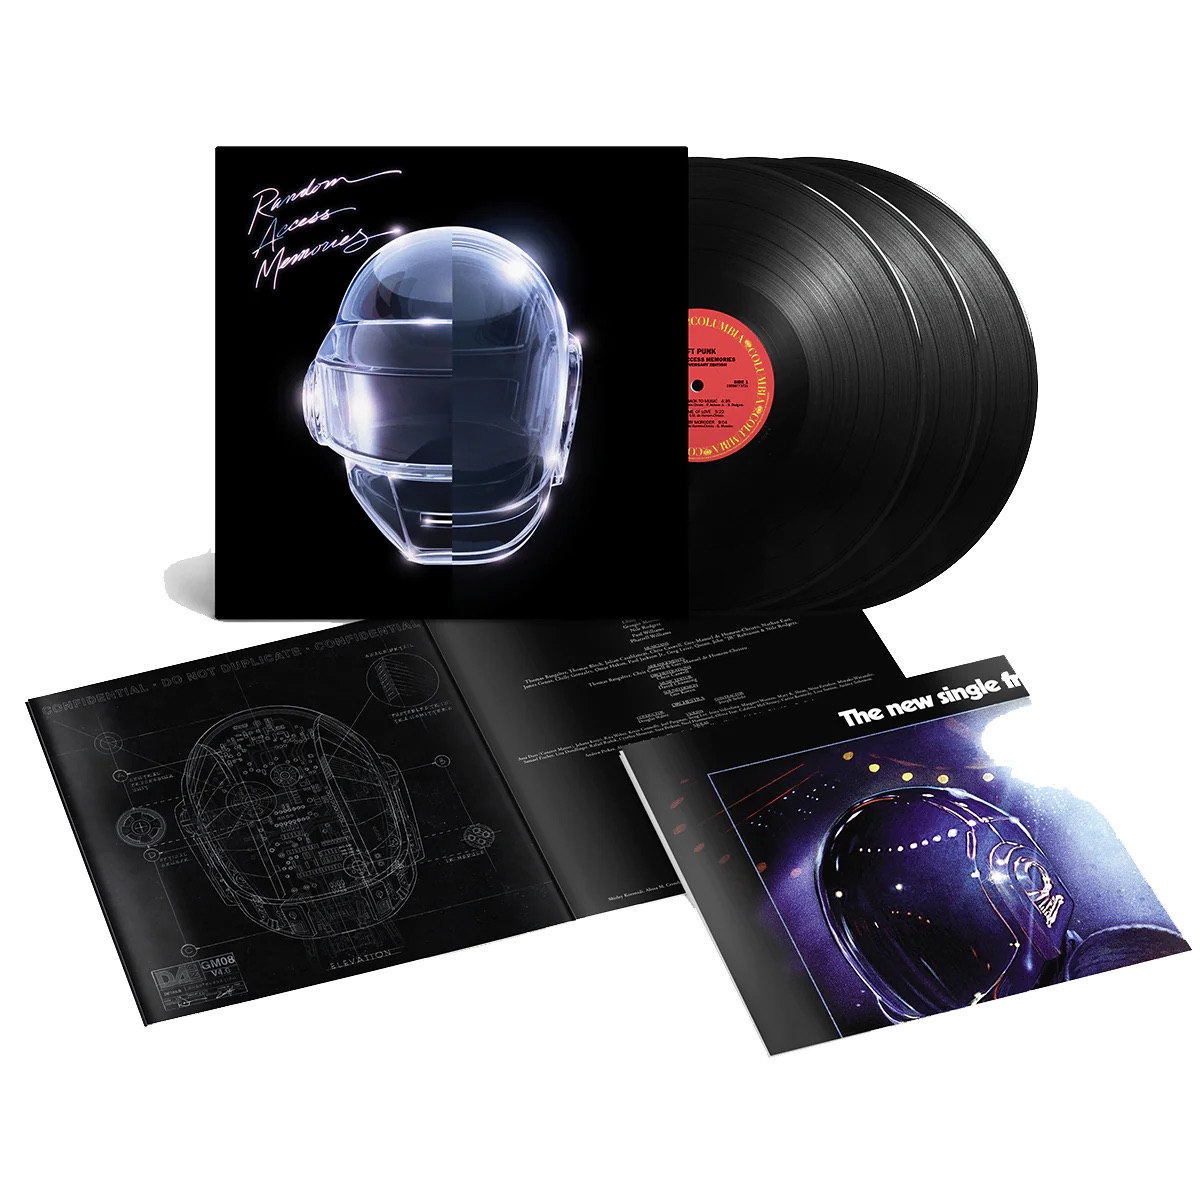 Daft Punk Reissue 'Random Access Memories' With Bonus Material